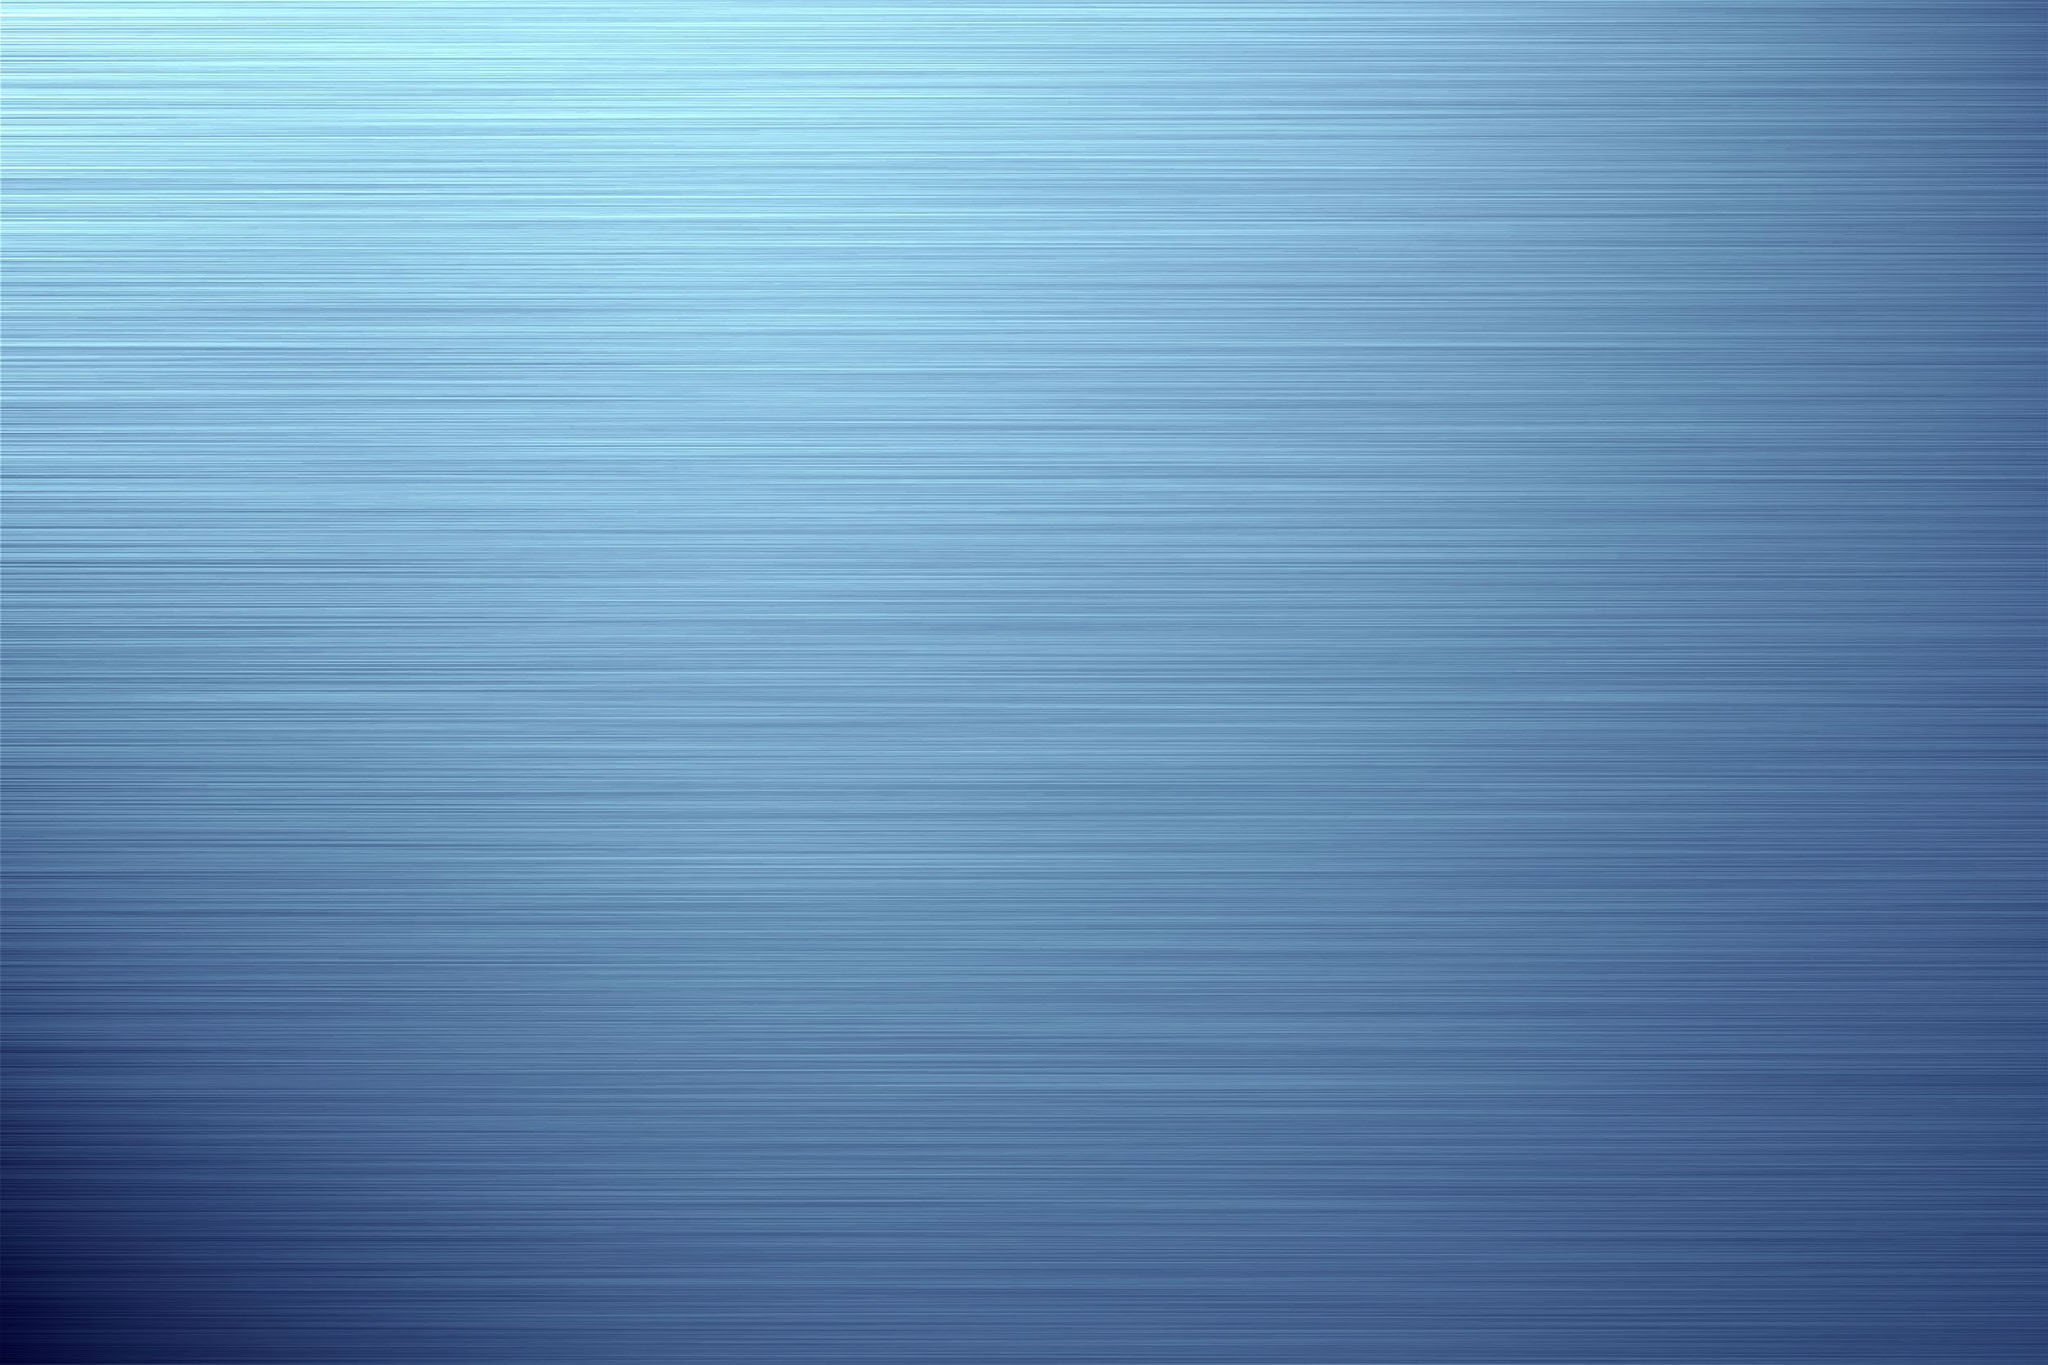 45+] Blue Steel Wallpaper - WallpaperSafari